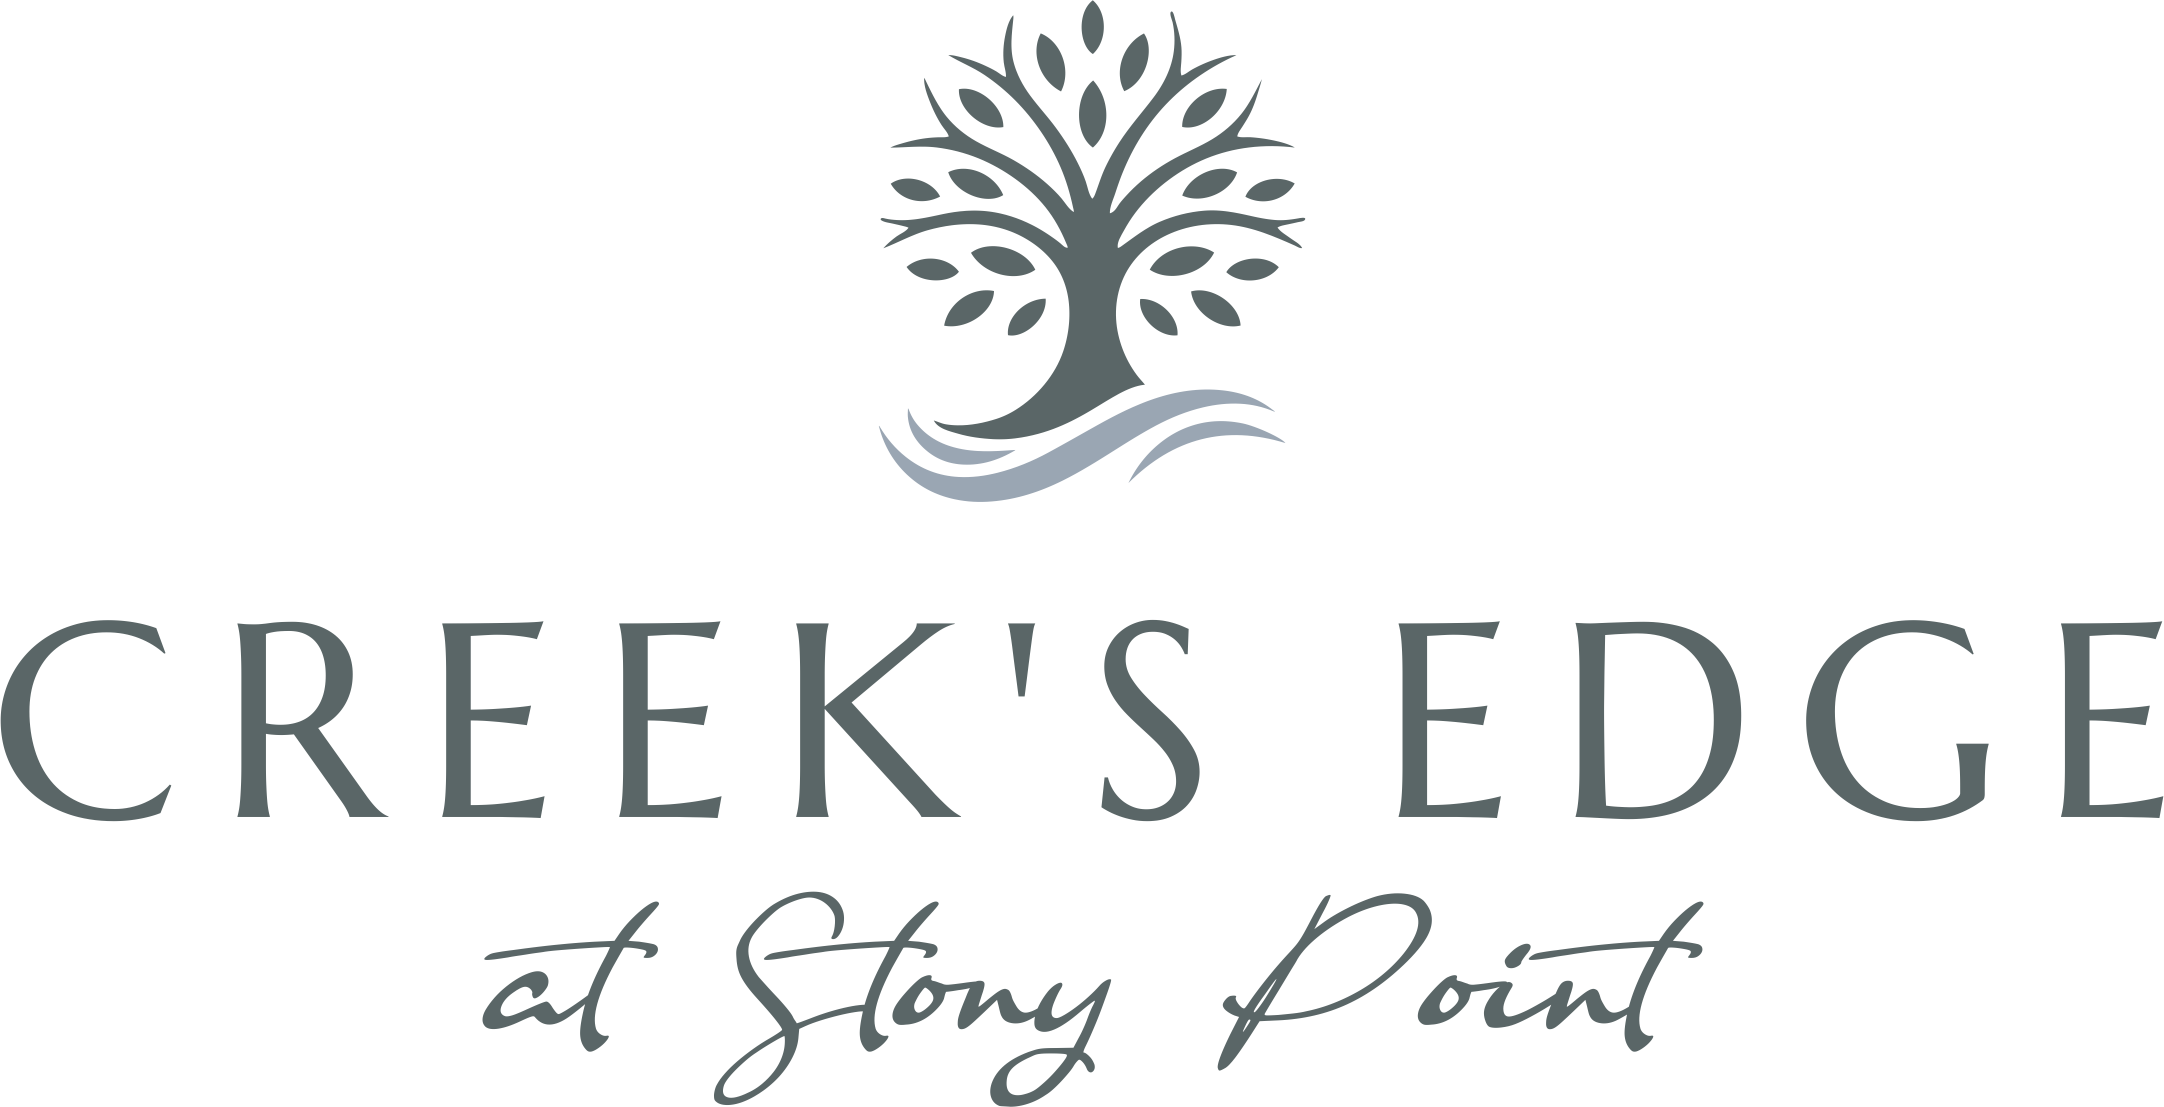 Creek's Edge at Stony Point Apartments Logo